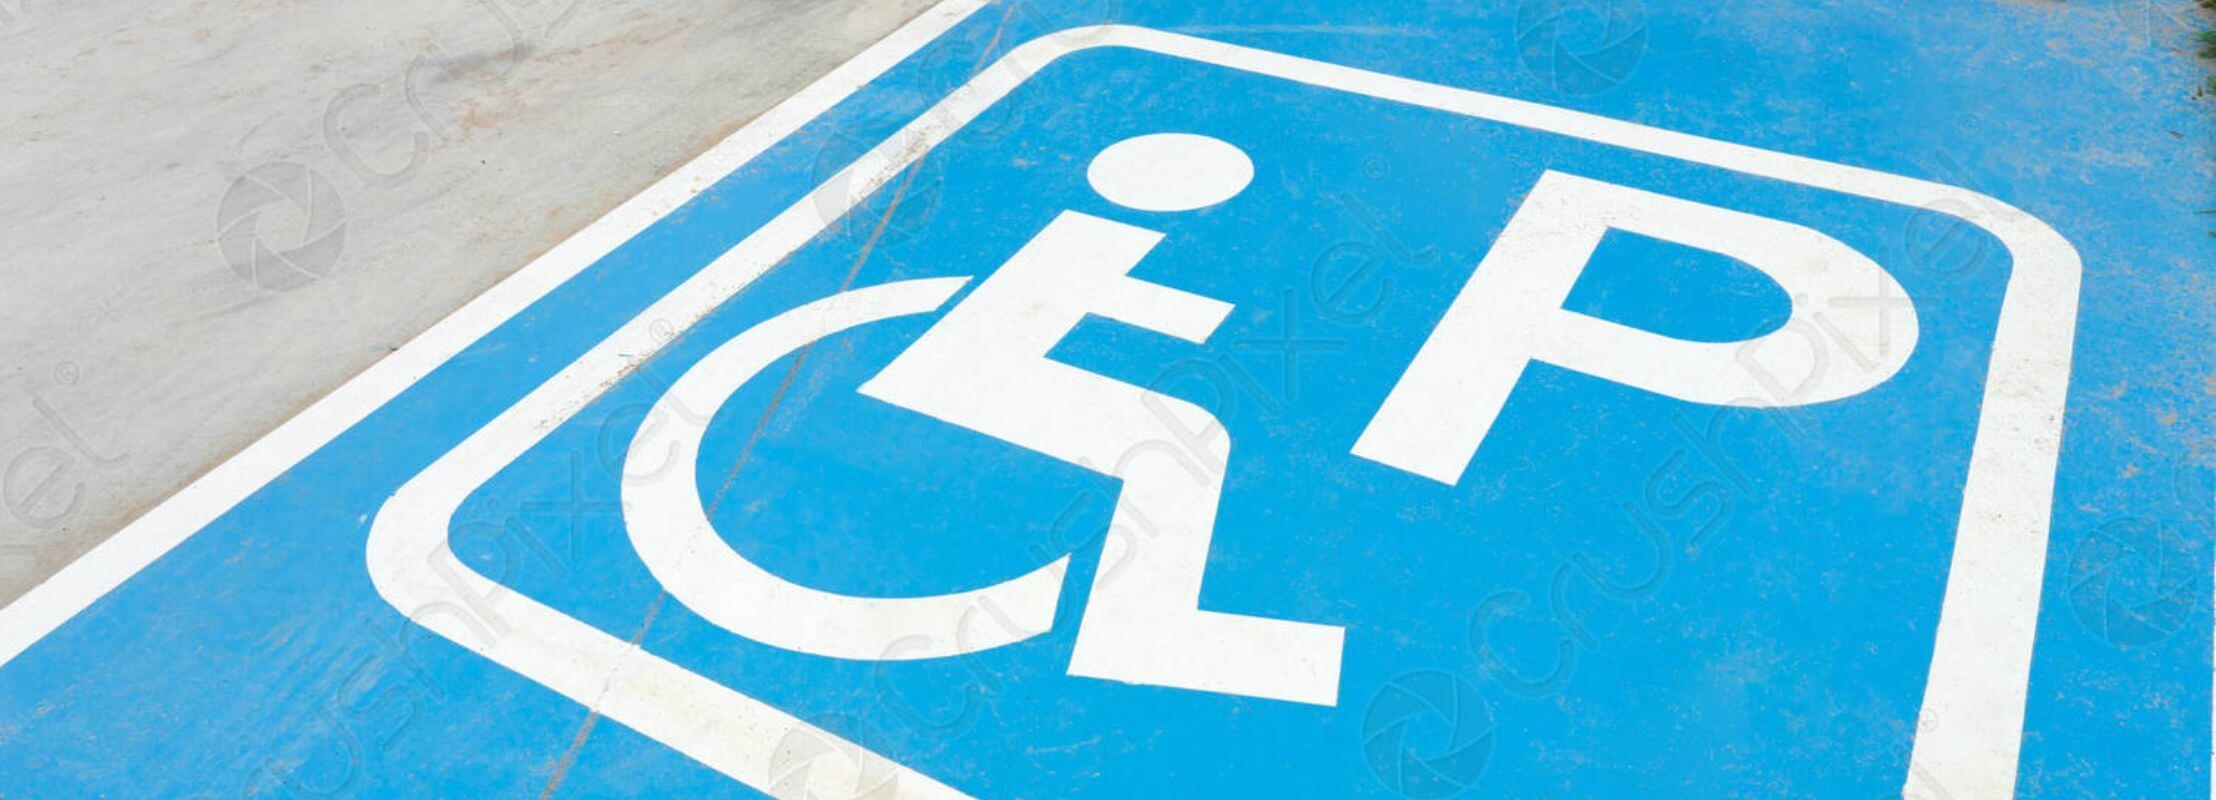 Quand pouvez-vous stationner sur un emplacement réservé aux personnes handicapées ? 